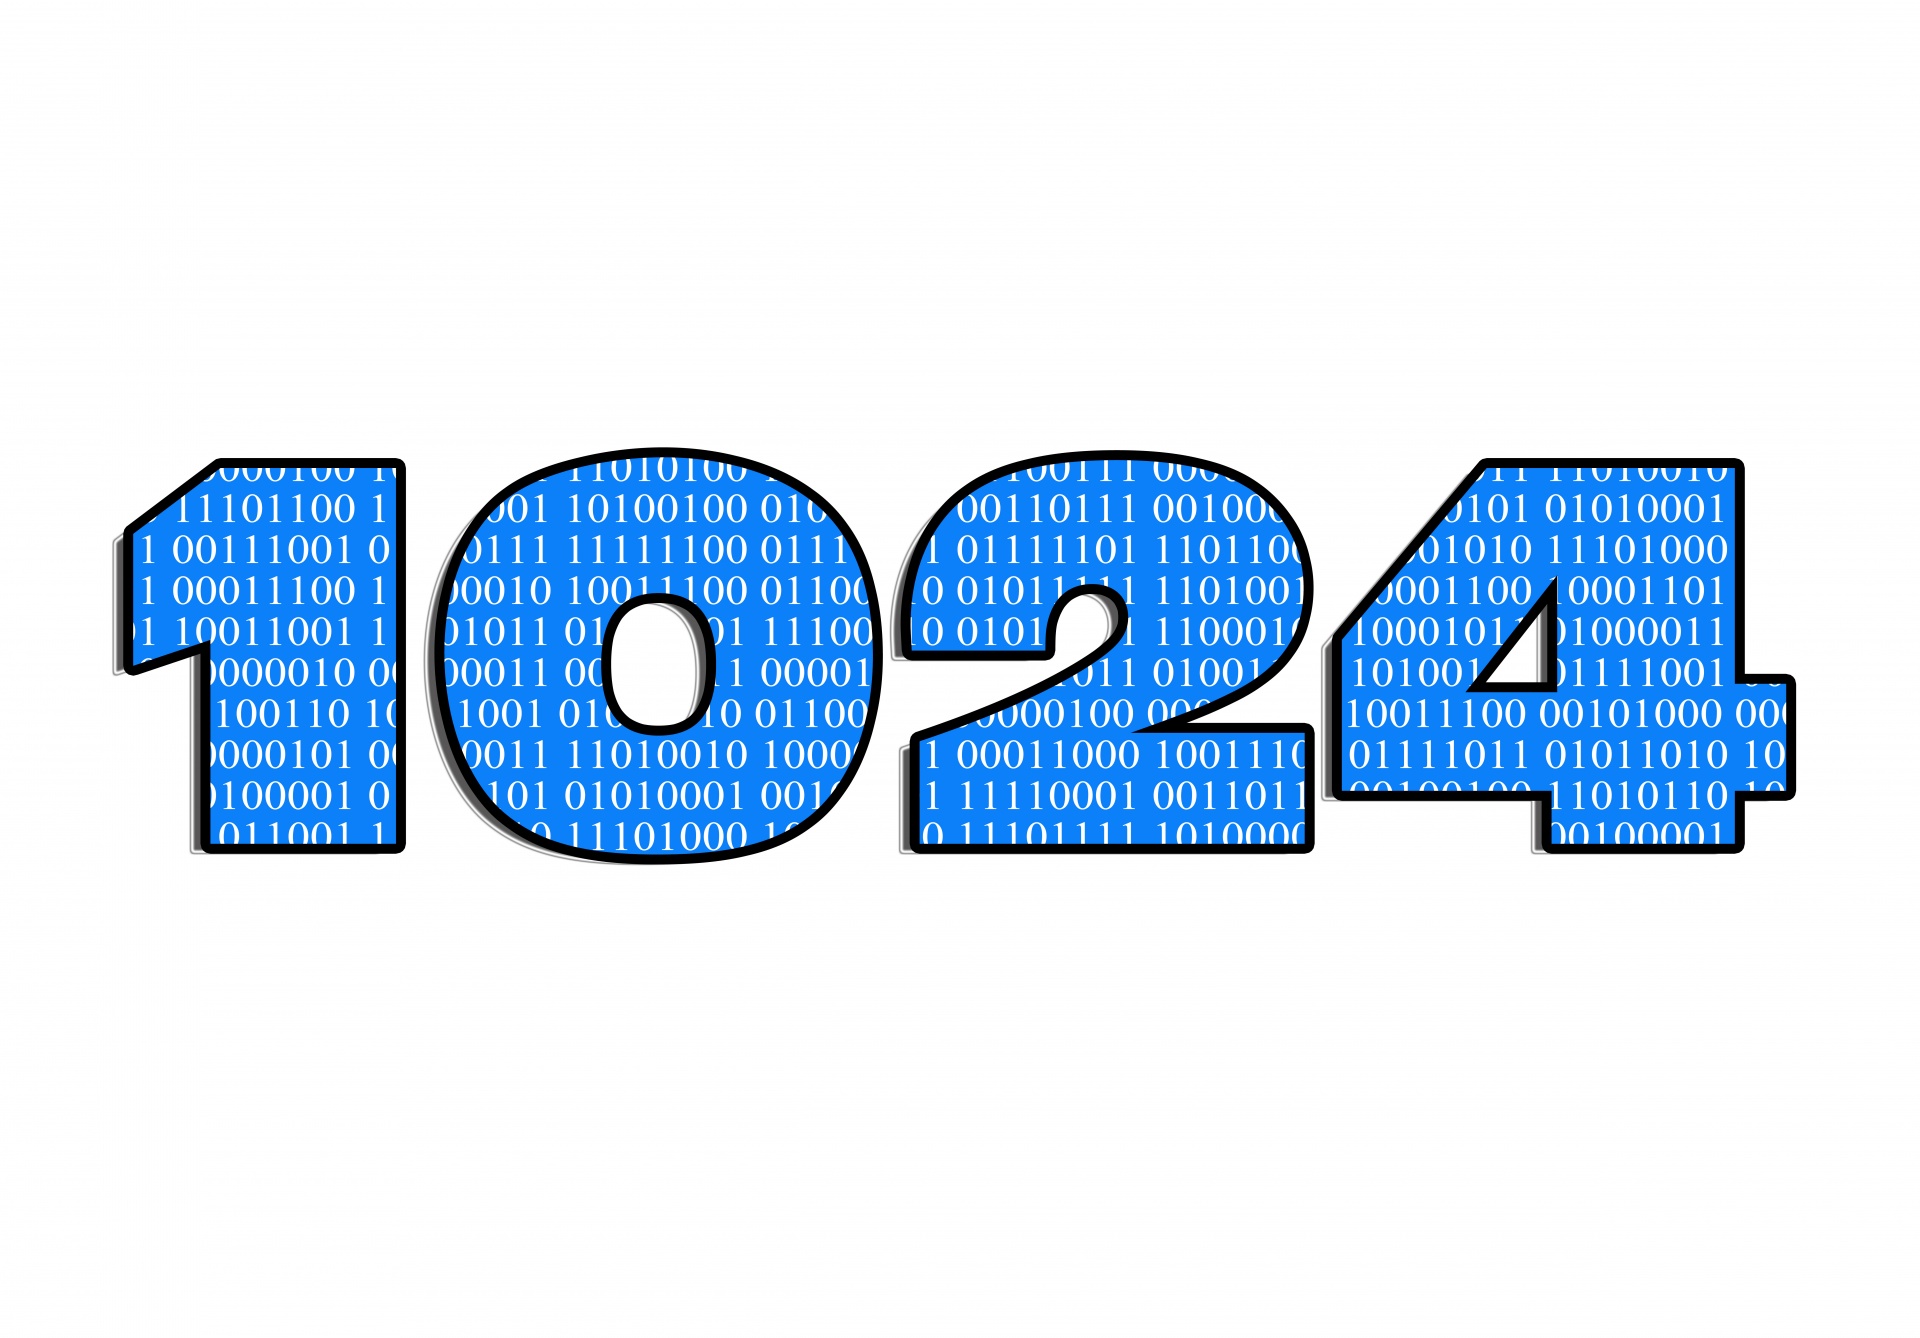 1024 computer number